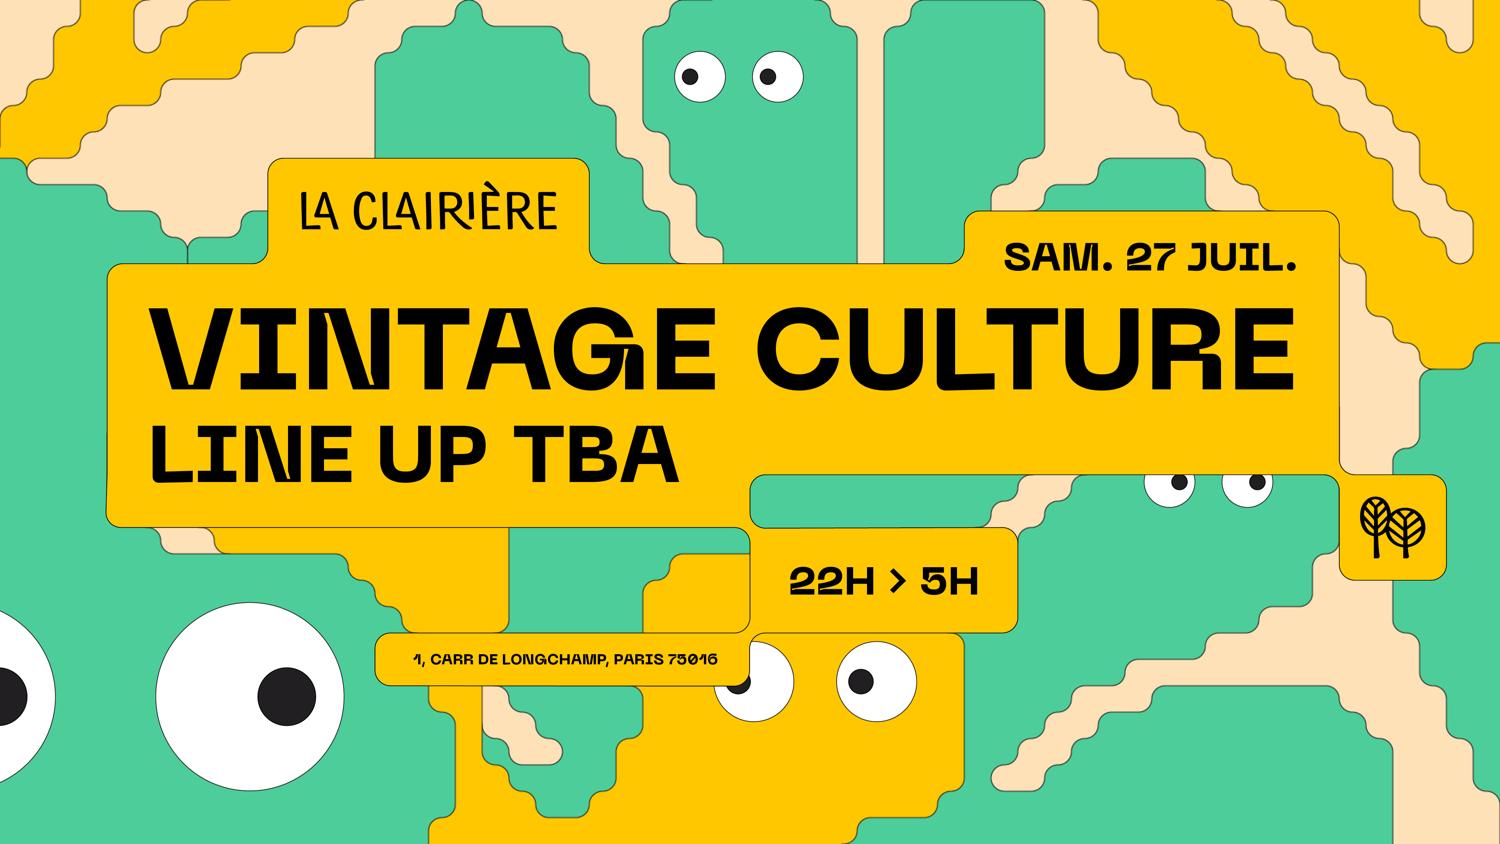 La Clairière: Vintage Culture